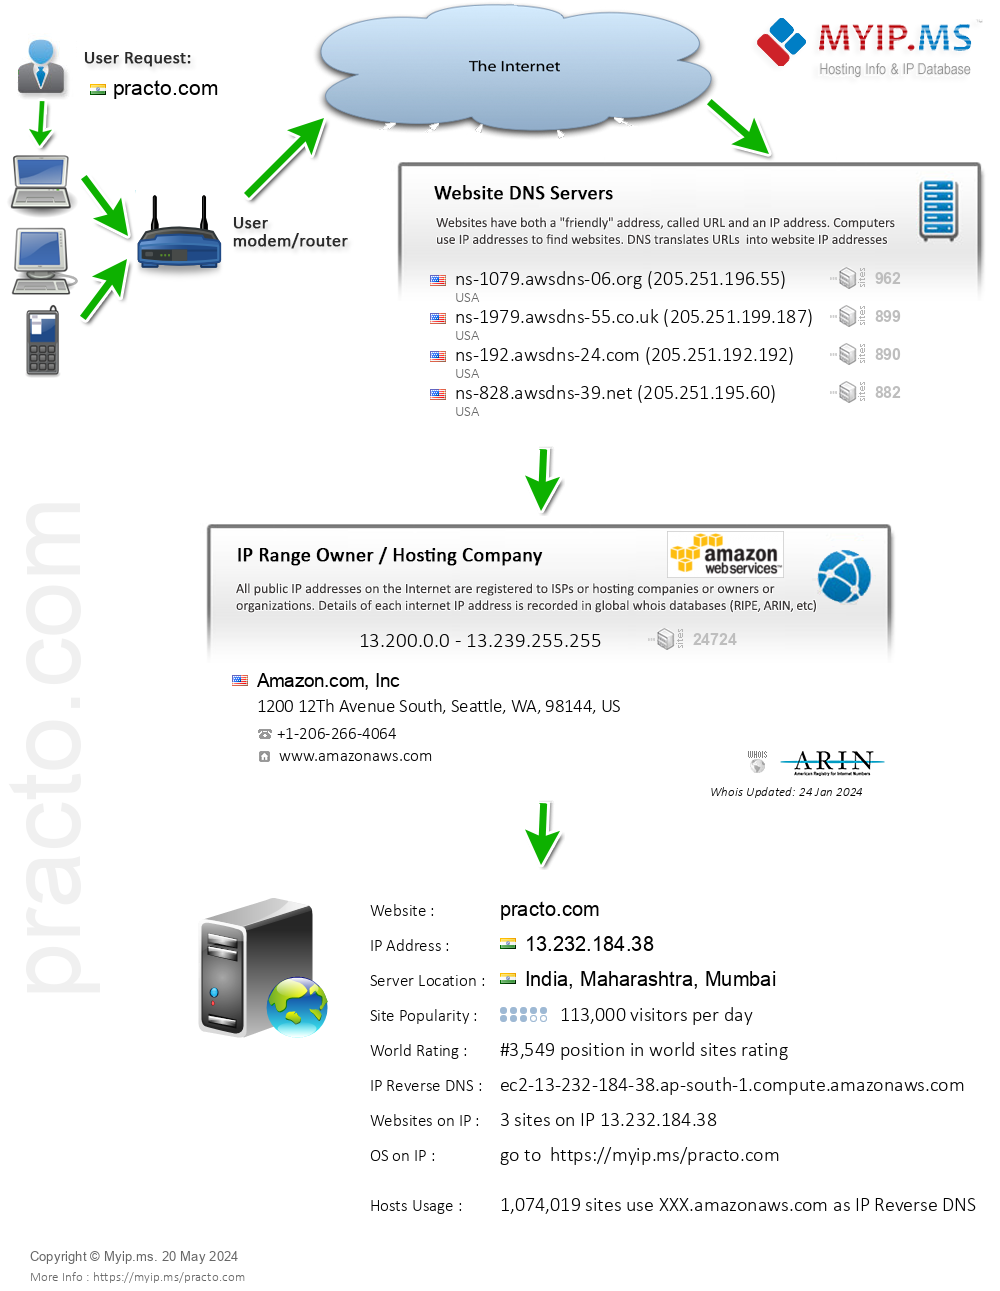 Practo.com - Website Hosting Visual IP Diagram